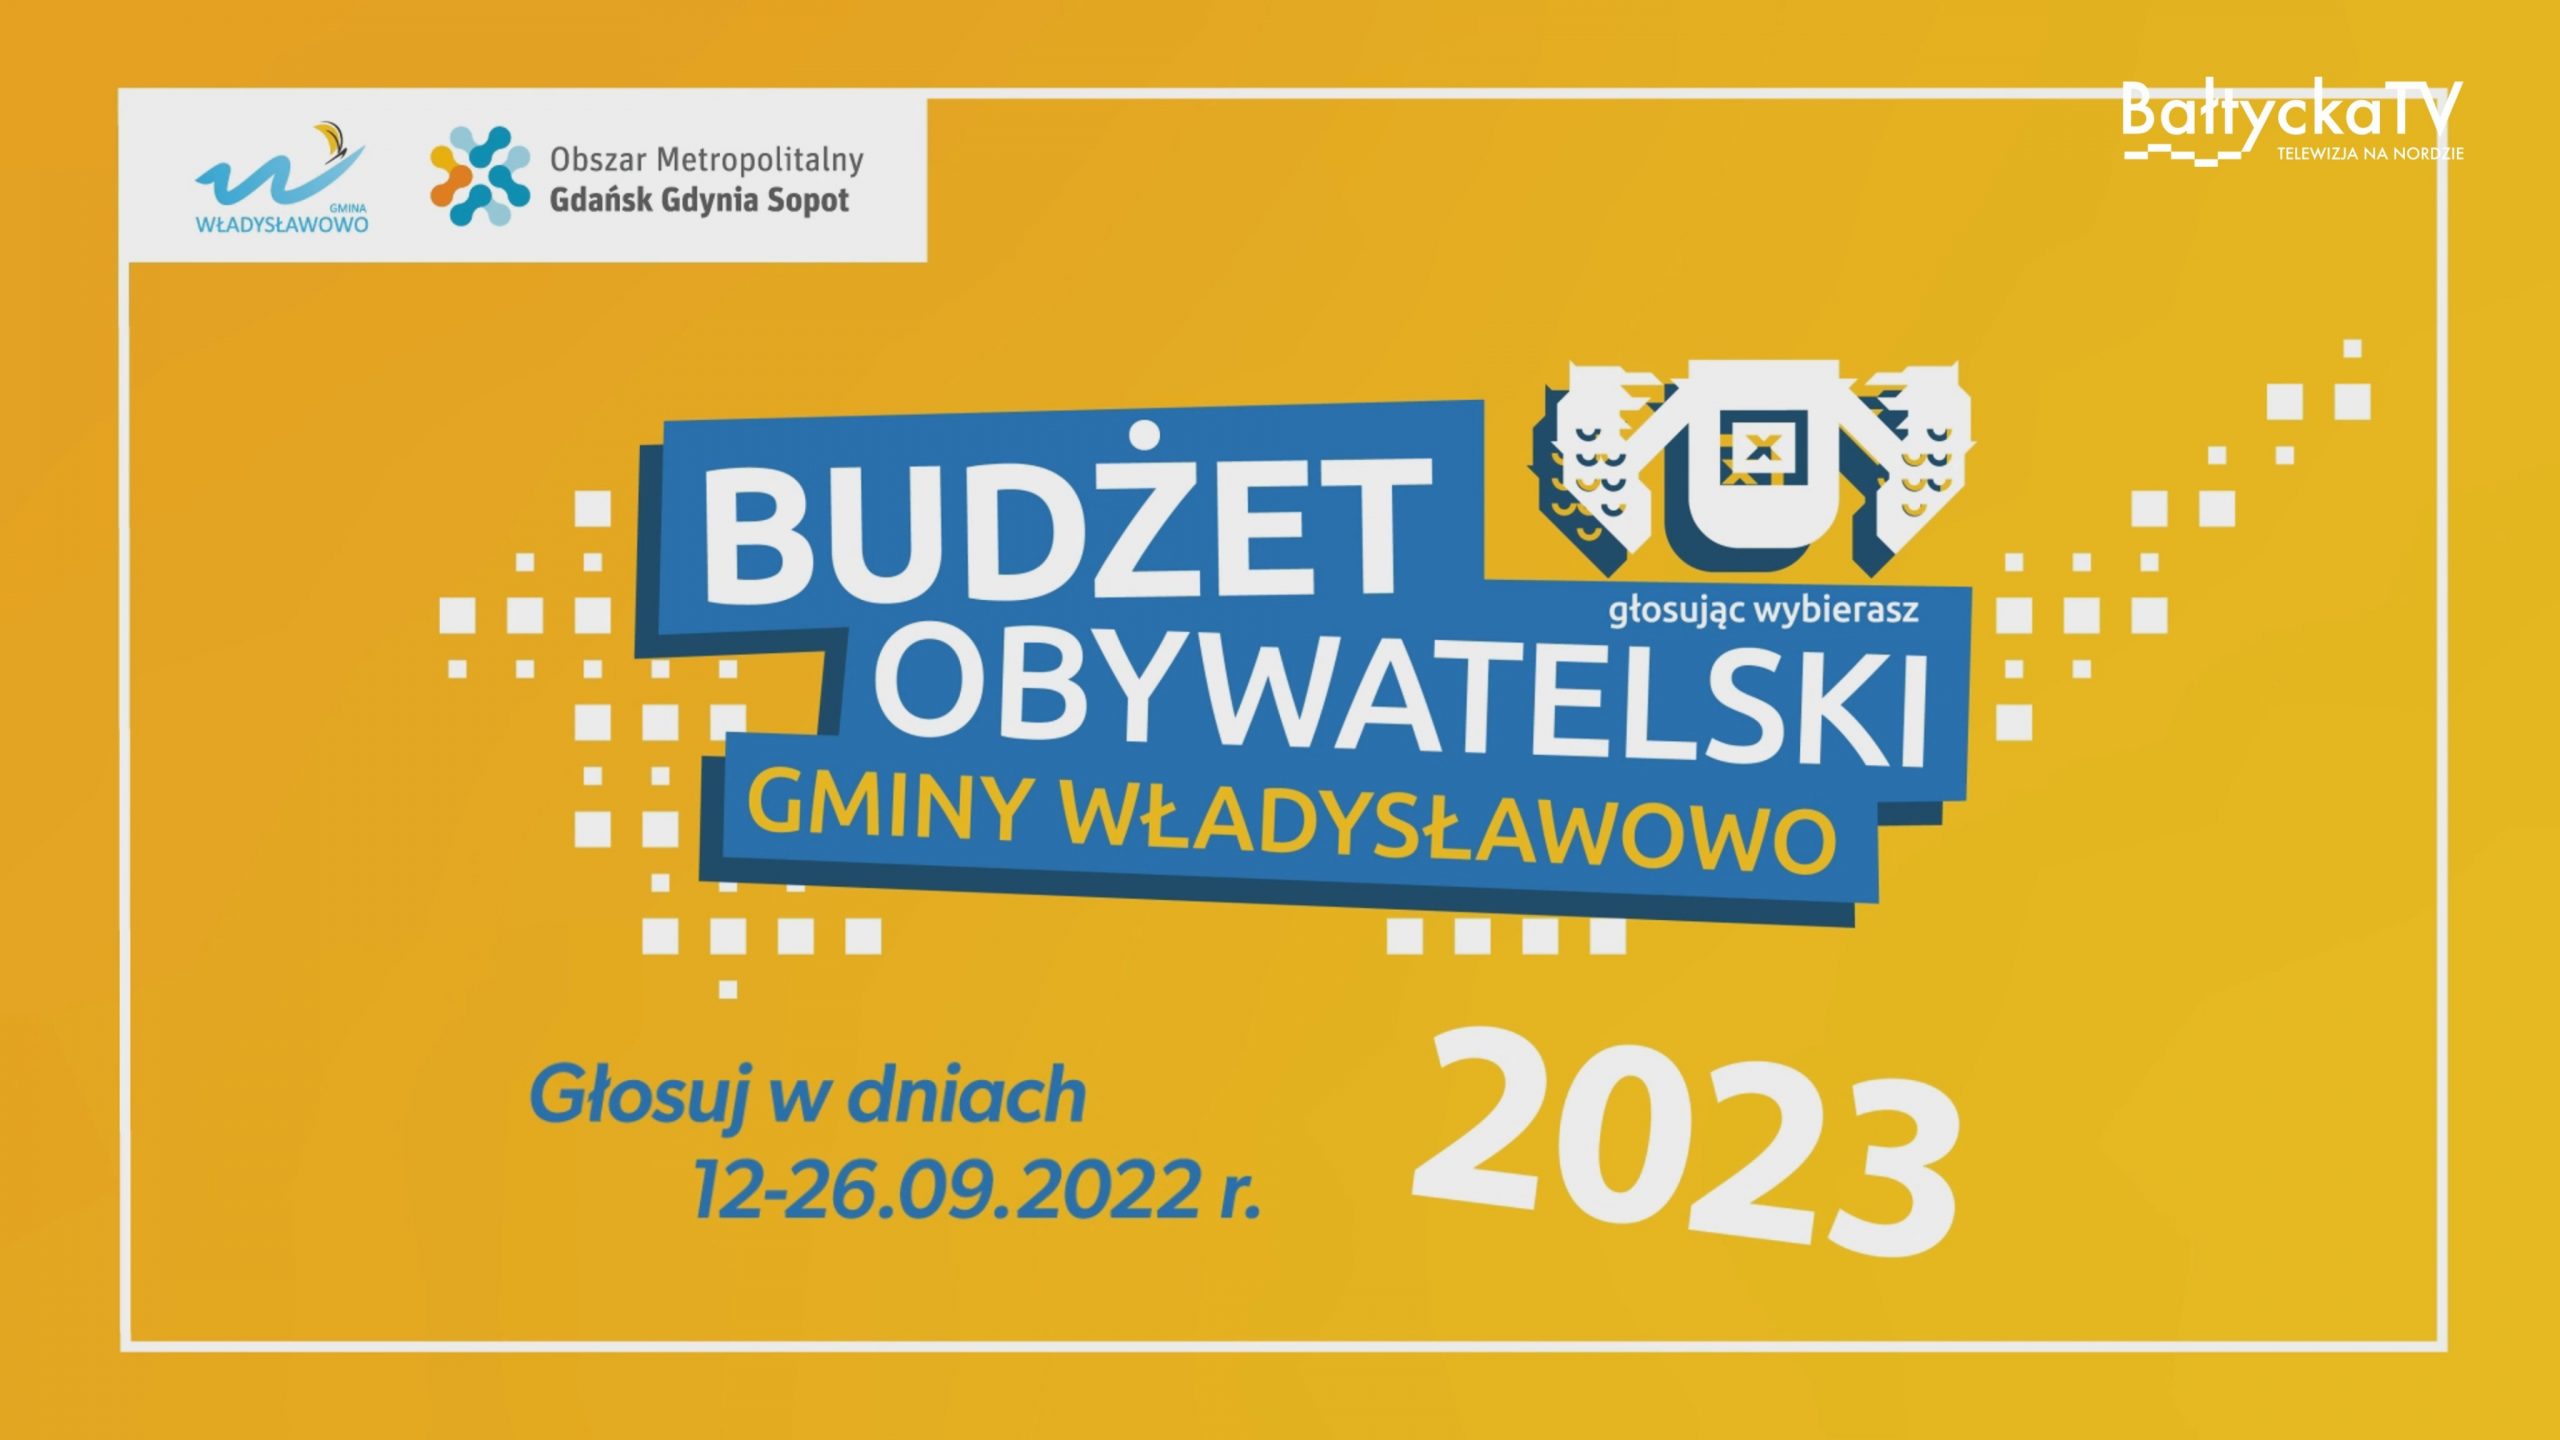 Budżet Obywatelski 2023 we Władysławowie – etap głosowania